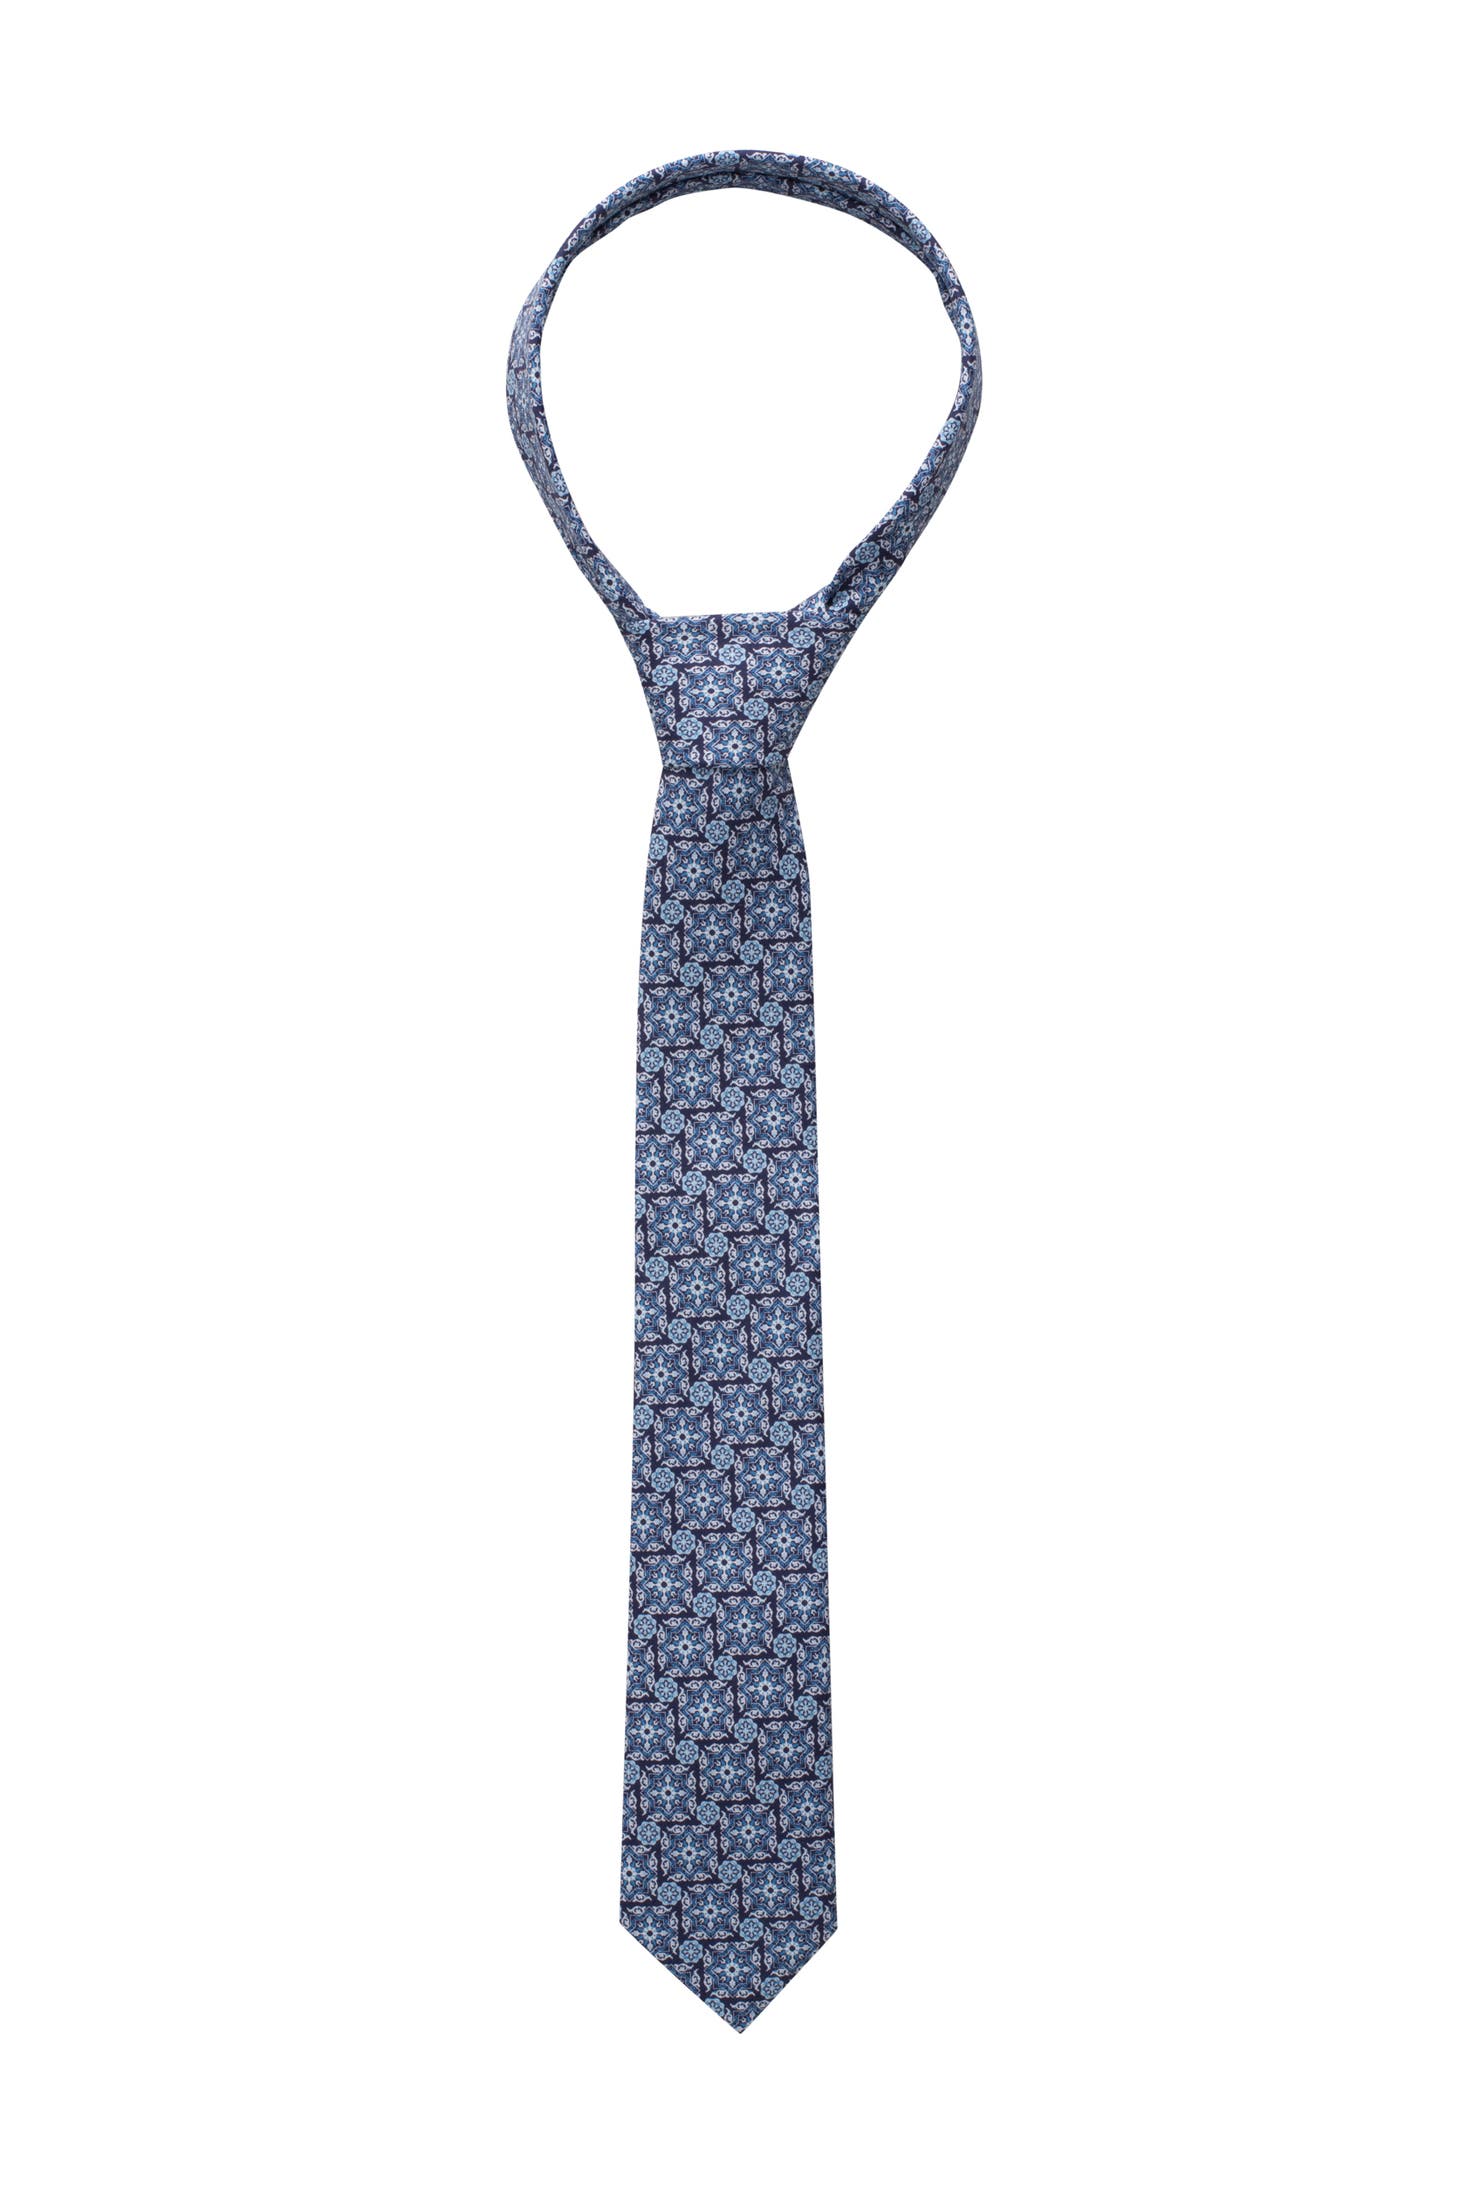 | Outletcity Baumwoll-Krawatte online kaufen » günstig hochwertige ETERNA -